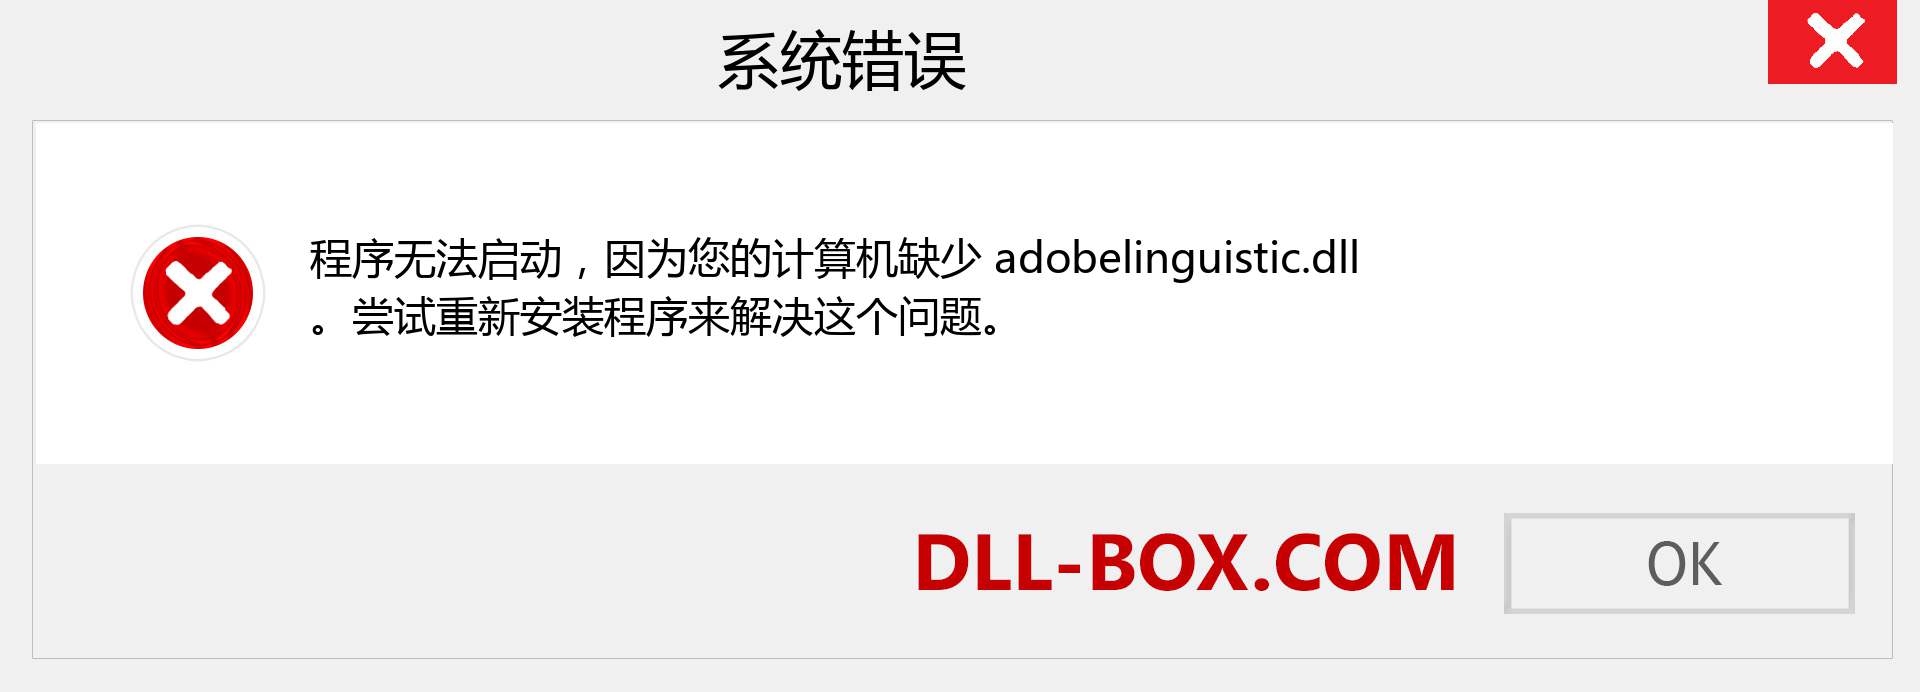 adobelinguistic.dll 文件丢失？。 适用于 Windows 7、8、10 的下载 - 修复 Windows、照片、图像上的 adobelinguistic dll 丢失错误